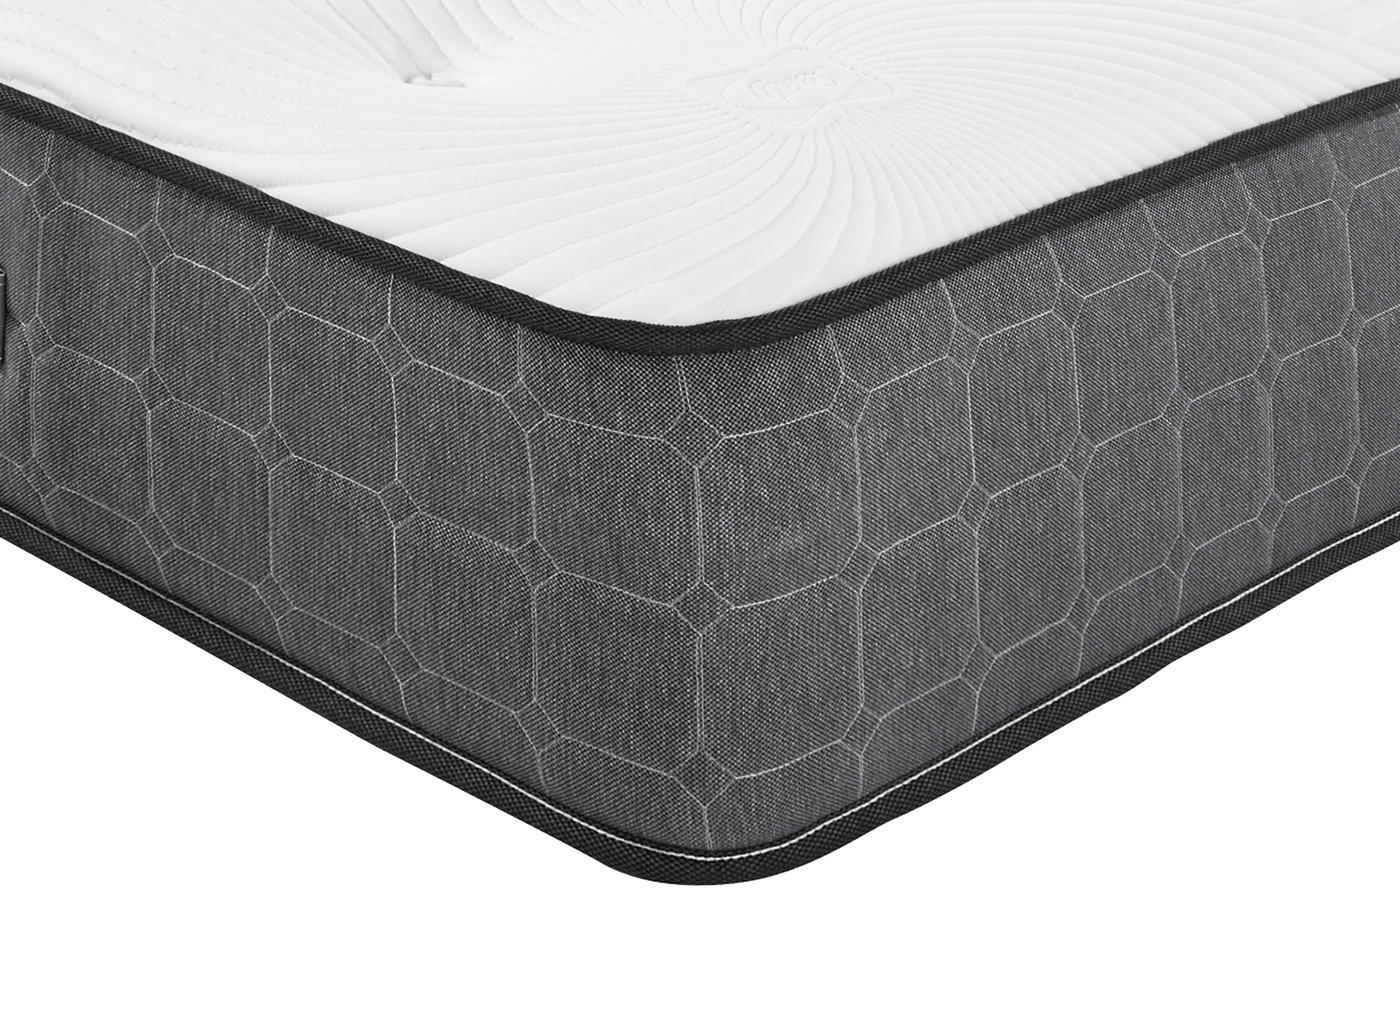 sealy activsleep geltex 2200 pocket spring mattress